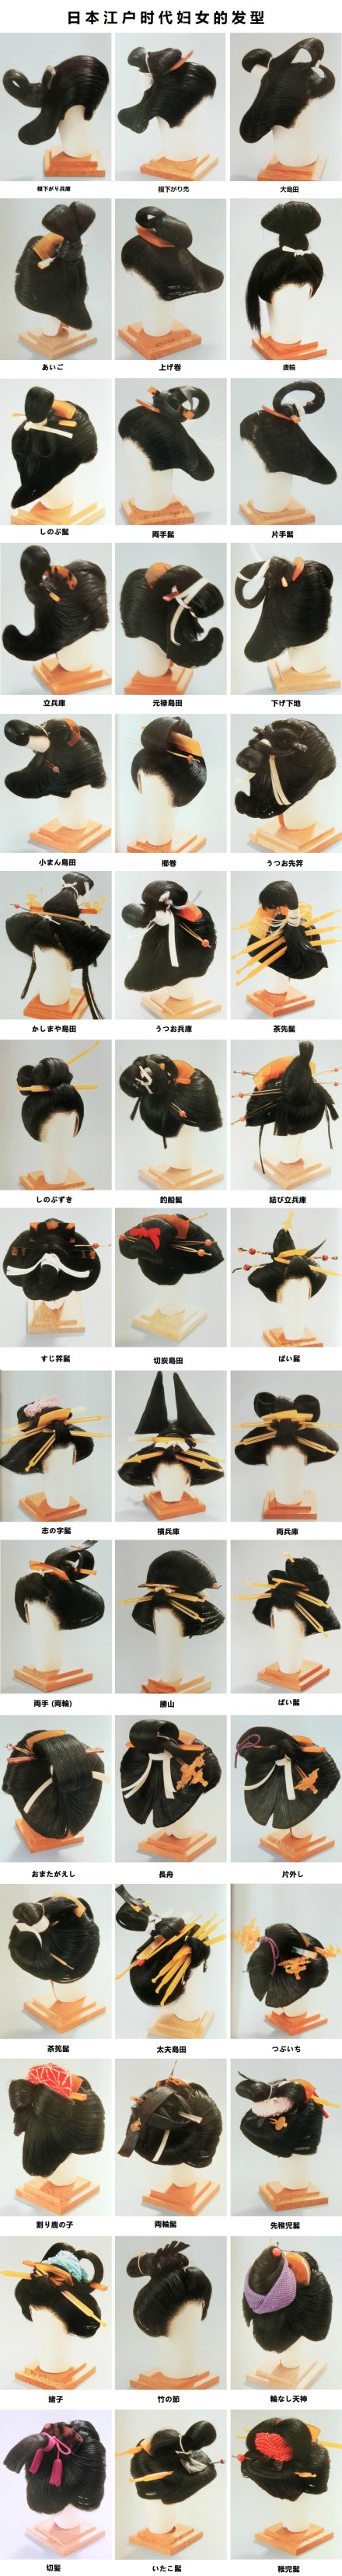 日本江户时期妇女发型